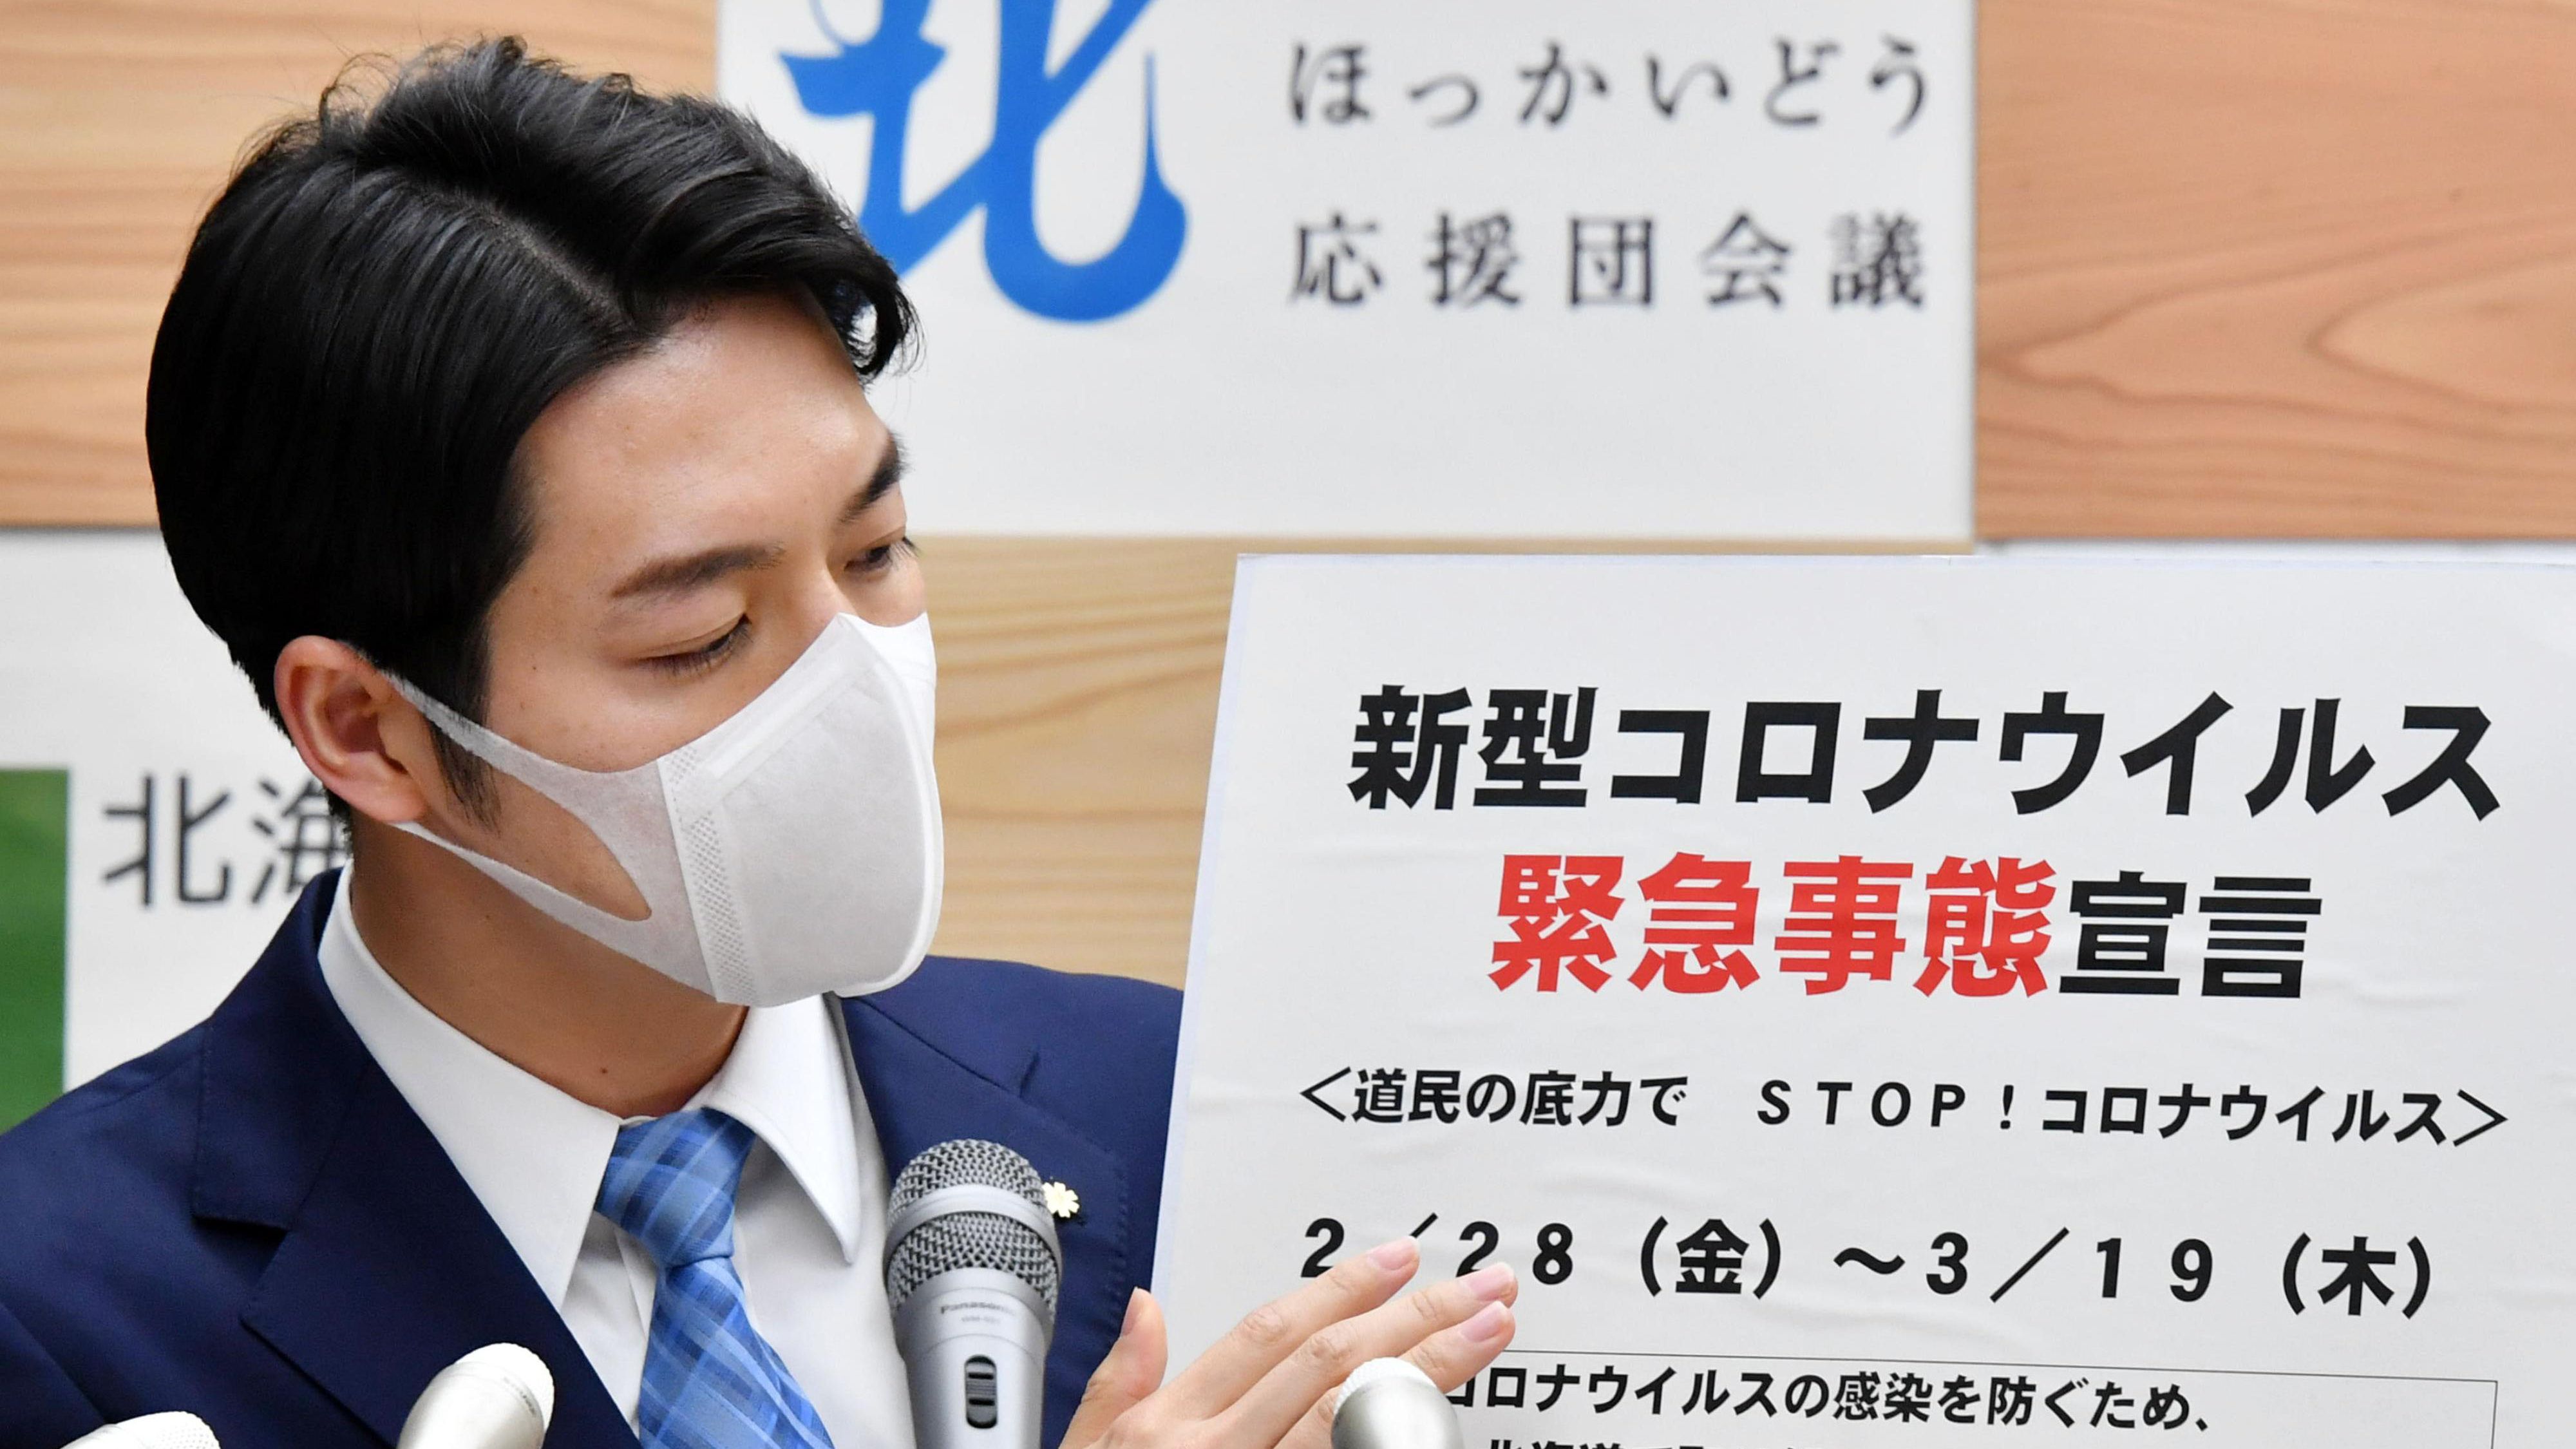 Rendkívüli állapotot hirdettek Hokkaidón a koronavírus miatt